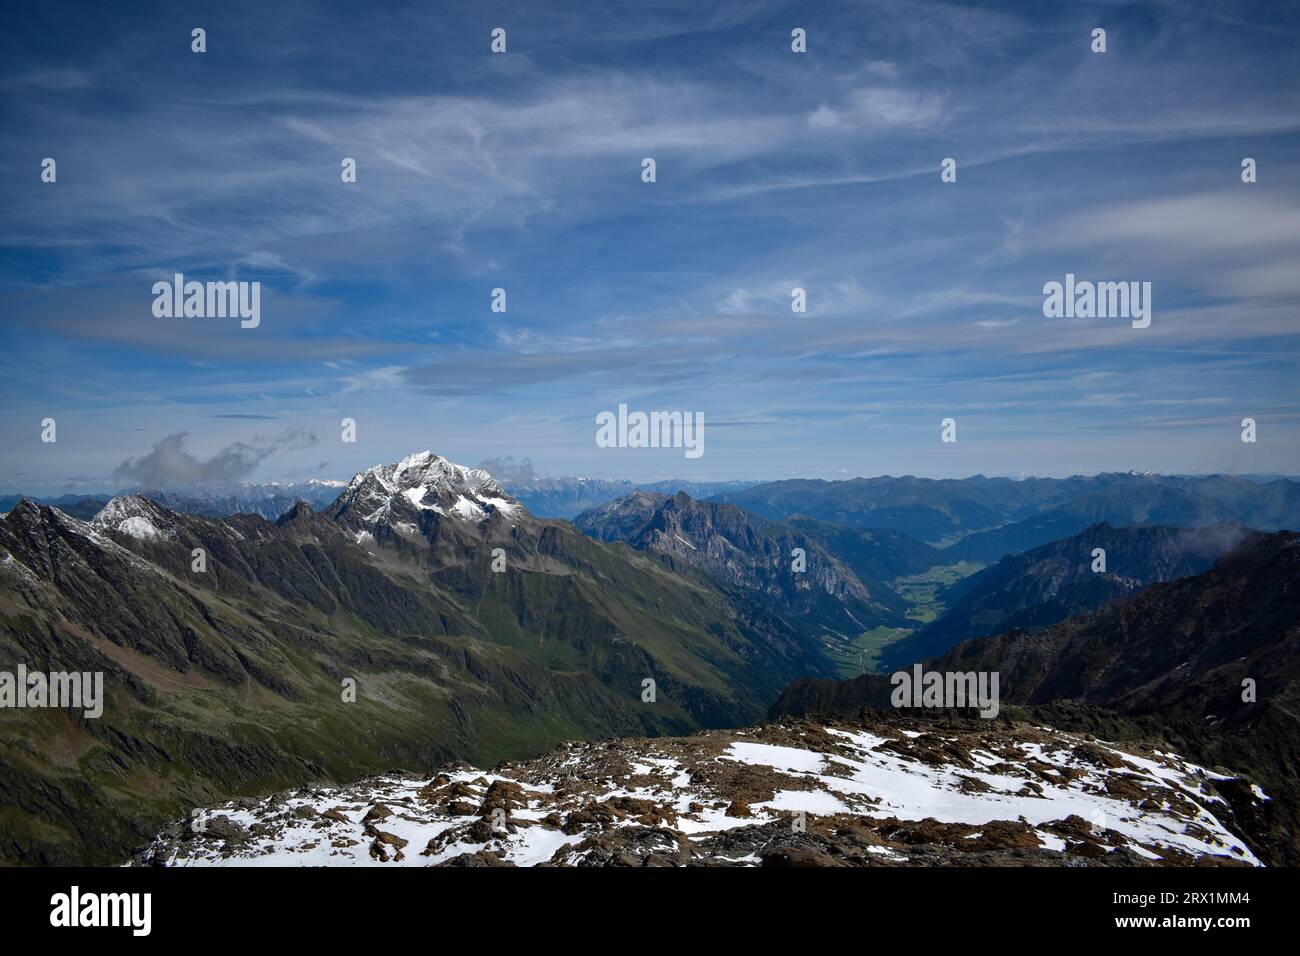 La vetta dell'Habicht nelle Alpi dello Stubai con neve fresca, vista dallo Schneespitze, sotto la valle dell'Obernberg, alto Adige, Italia Foto Stock